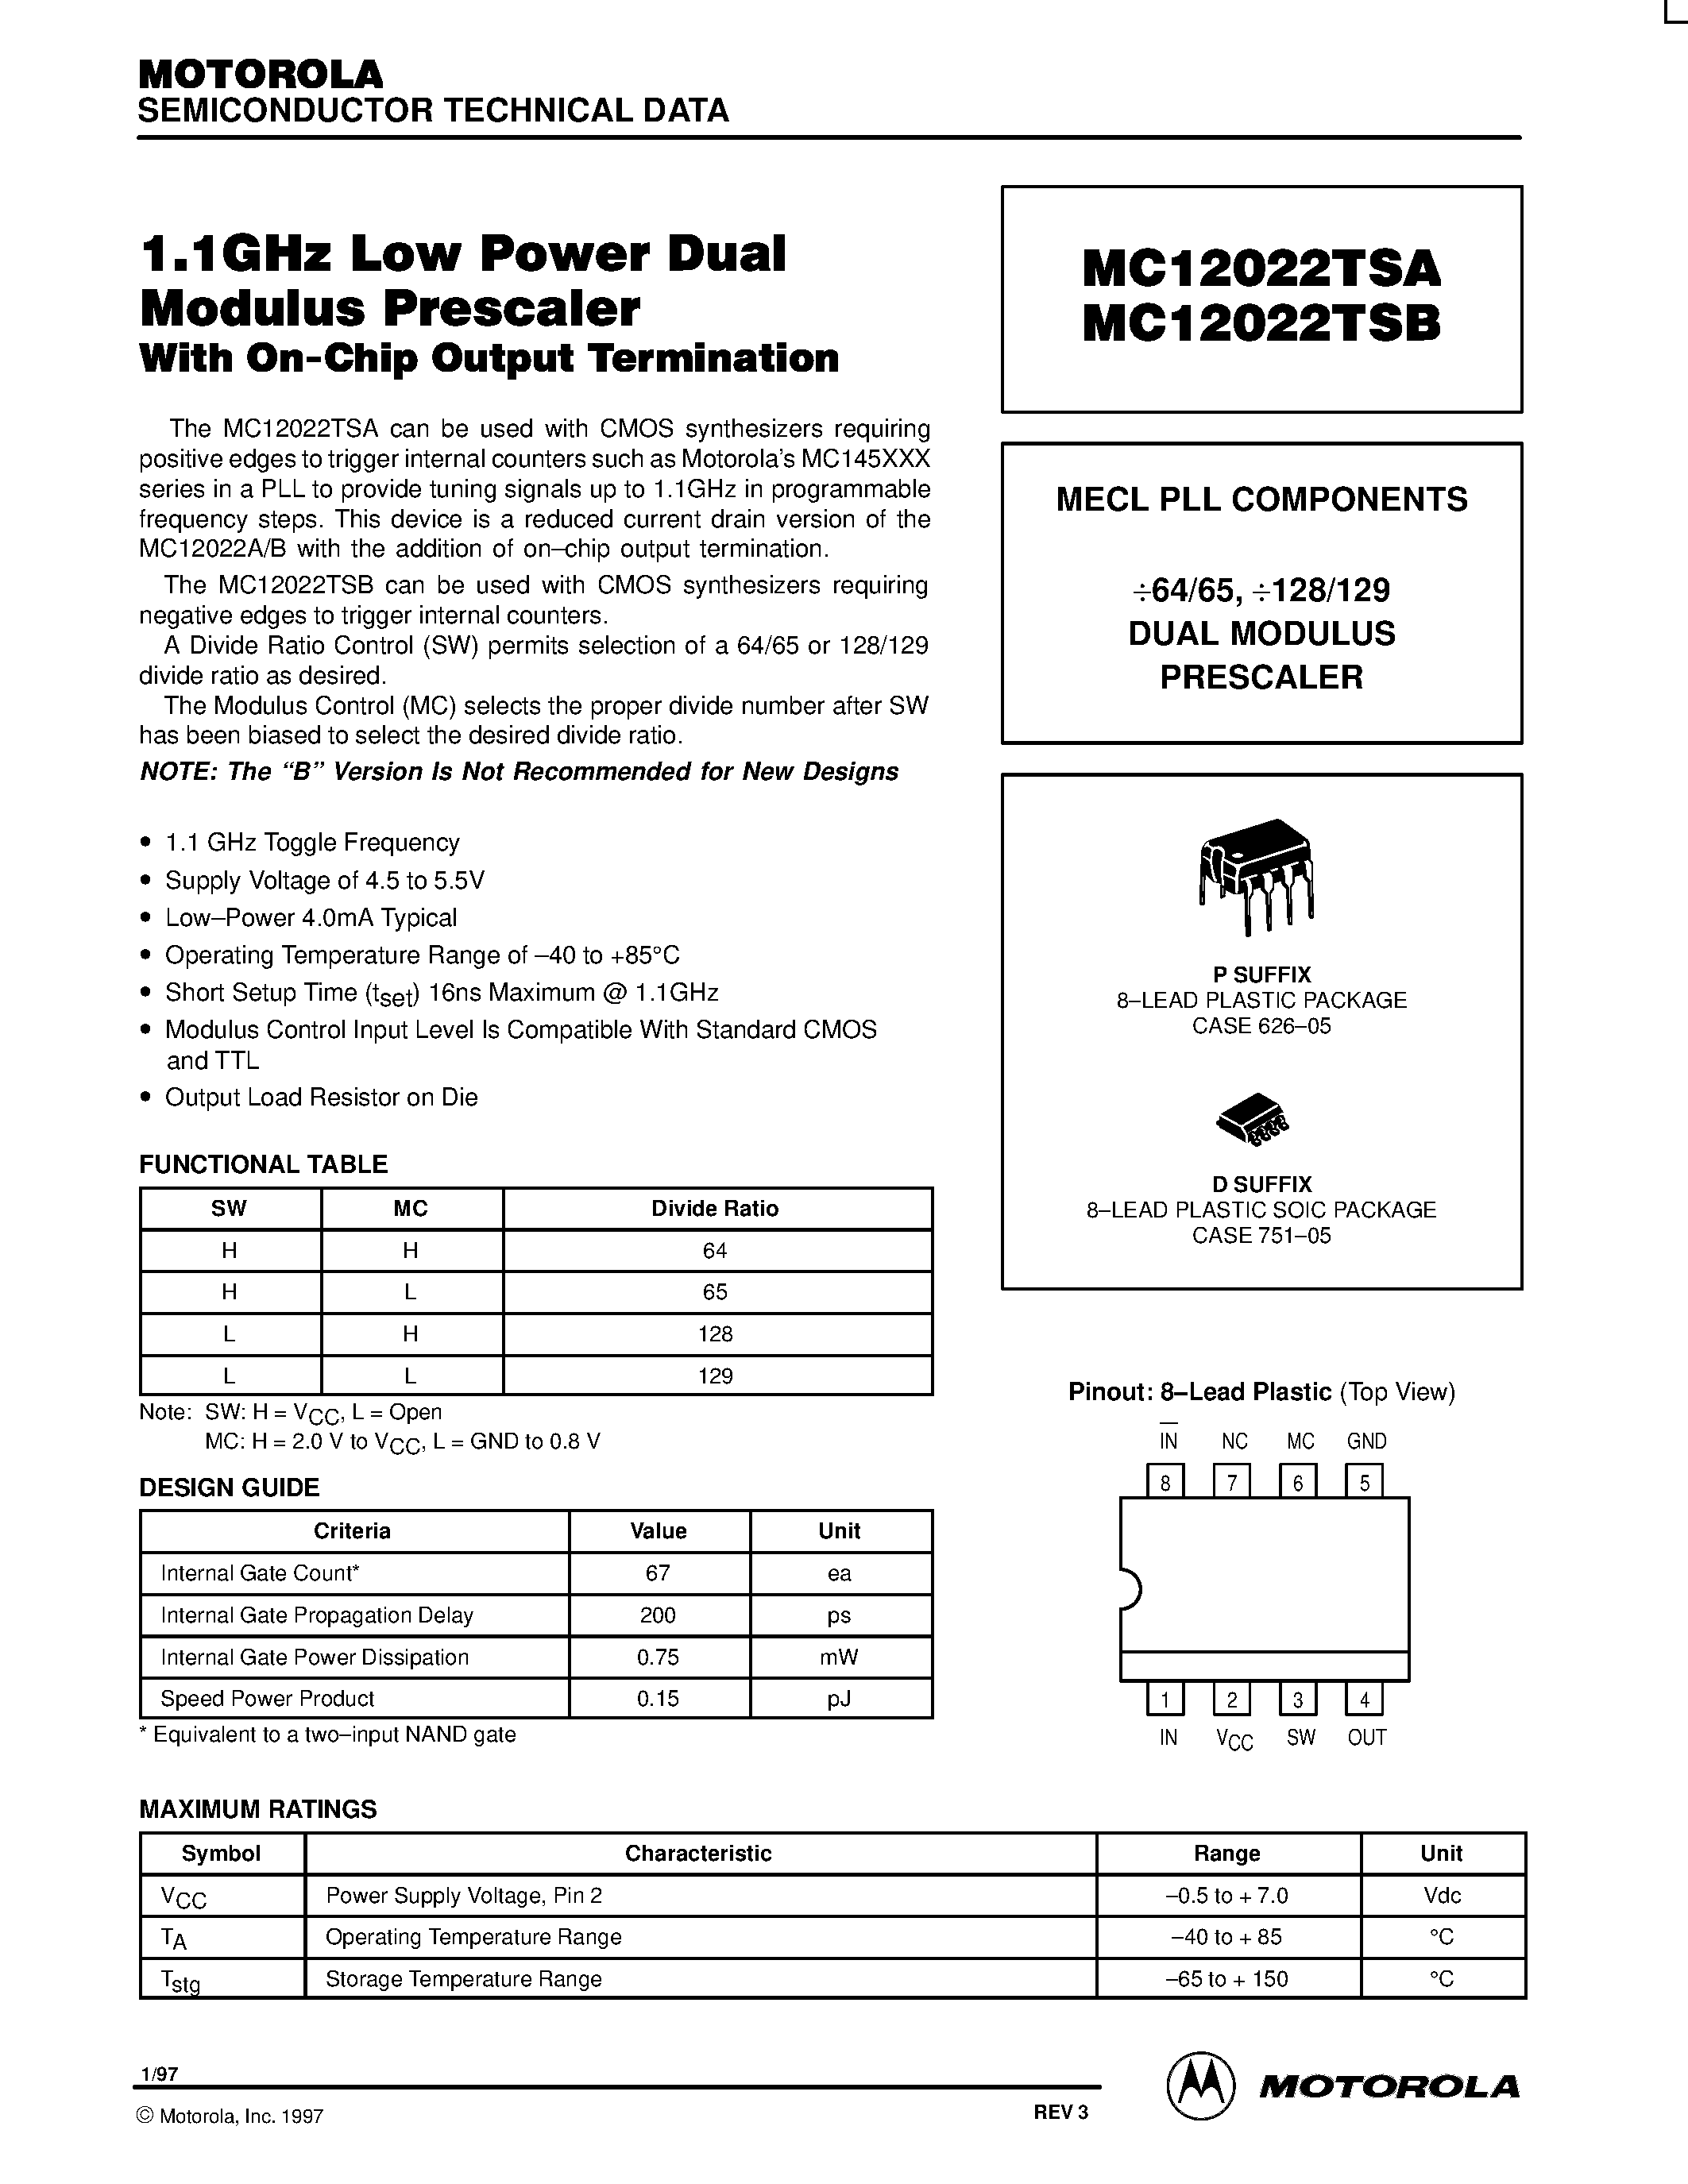 Datasheet MC12022TSBP - MECL PLL COMPONENTS 64/65 / 128/129 DUAL MODULUS PRESCALE page 1